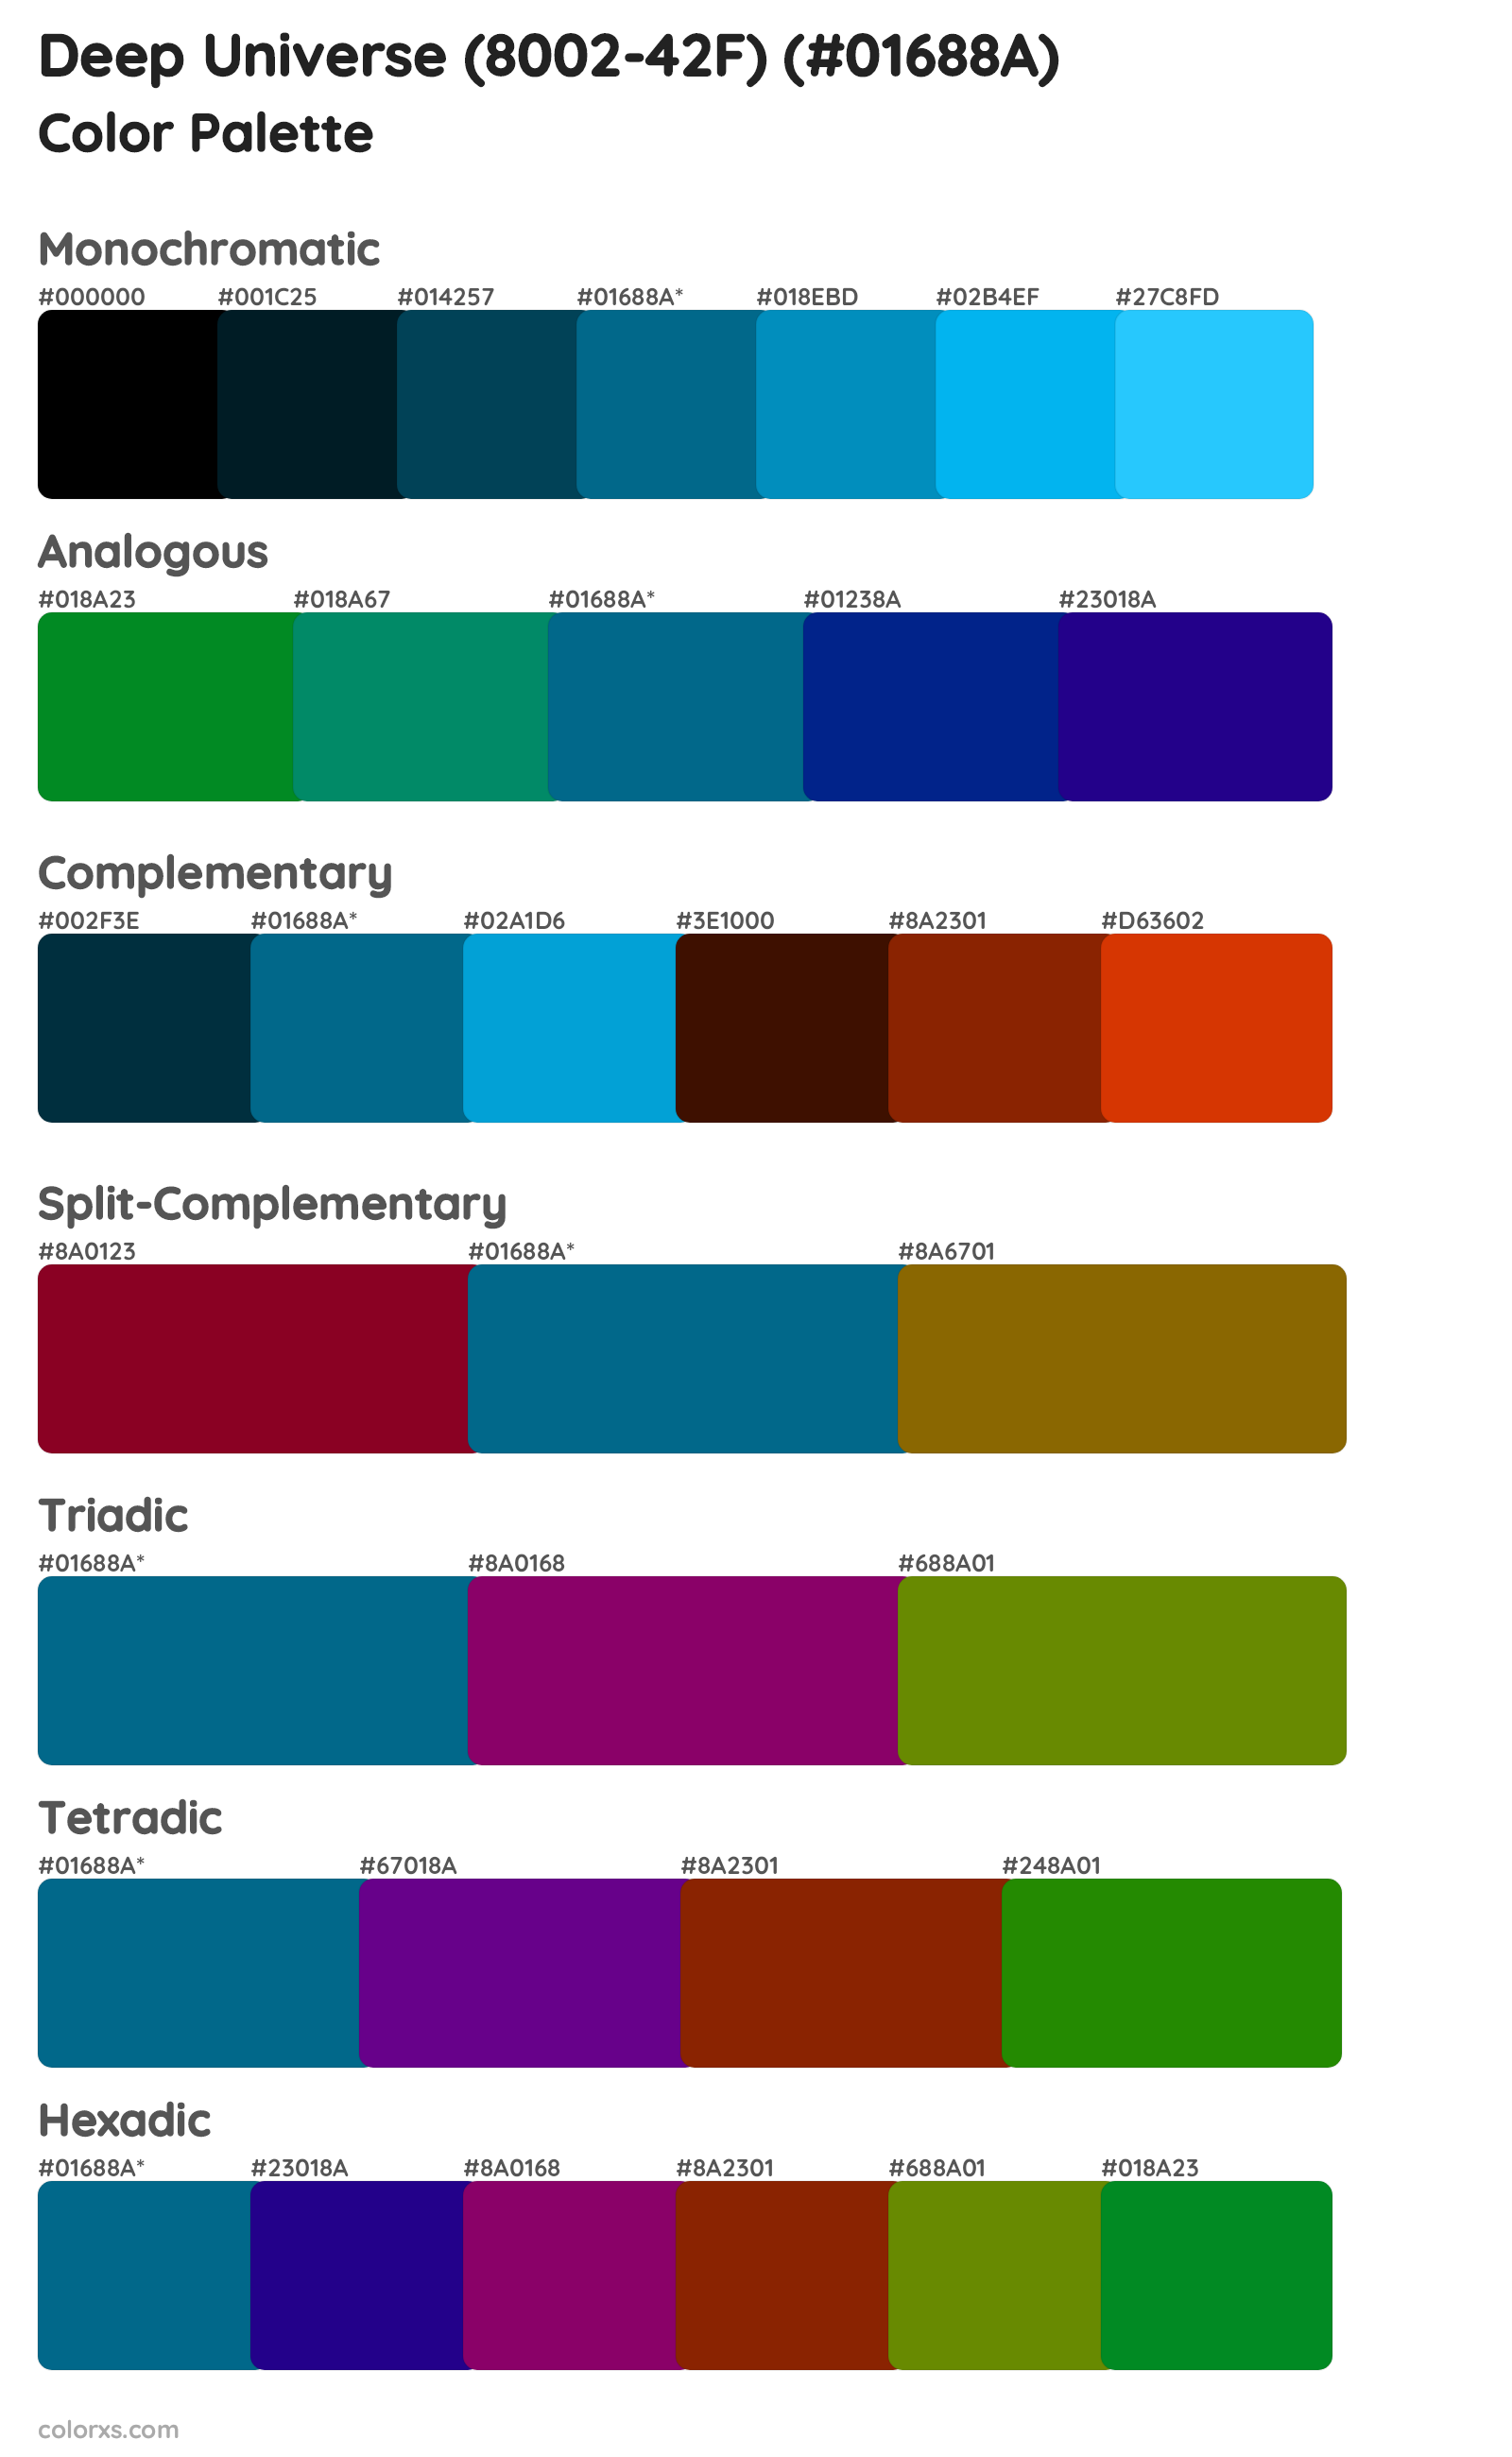 Deep Universe (8002-42F) Color Scheme Palettes